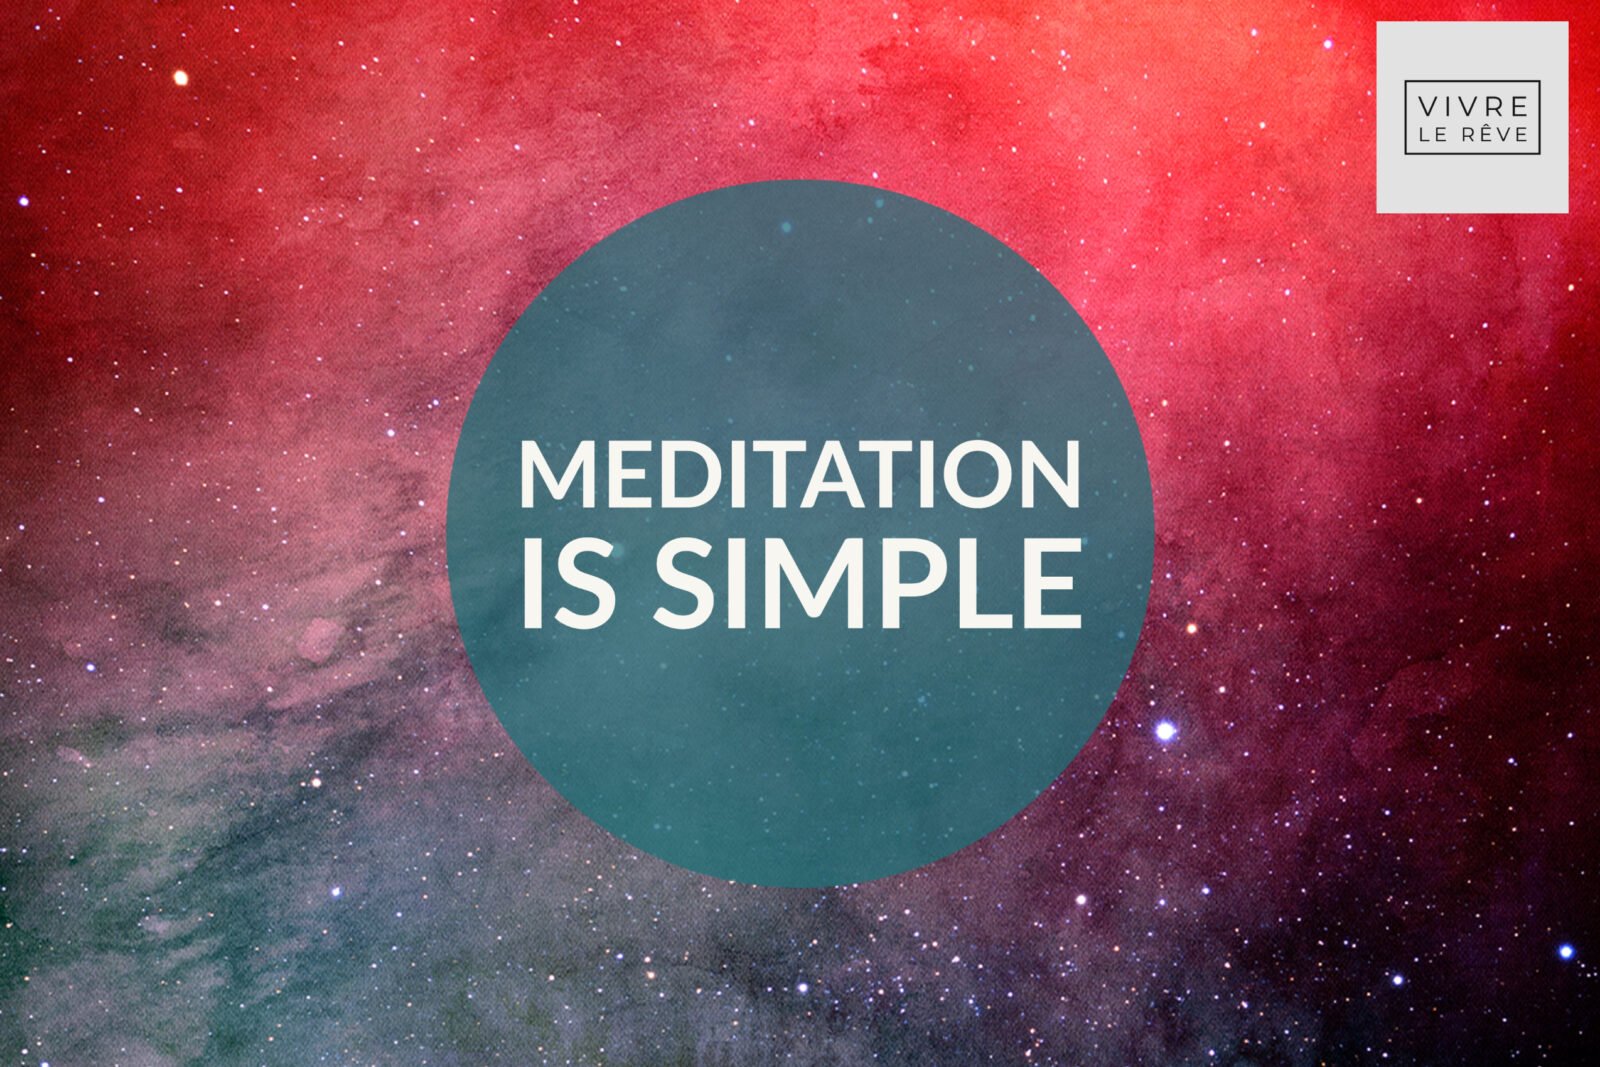 Meditation IS Simple